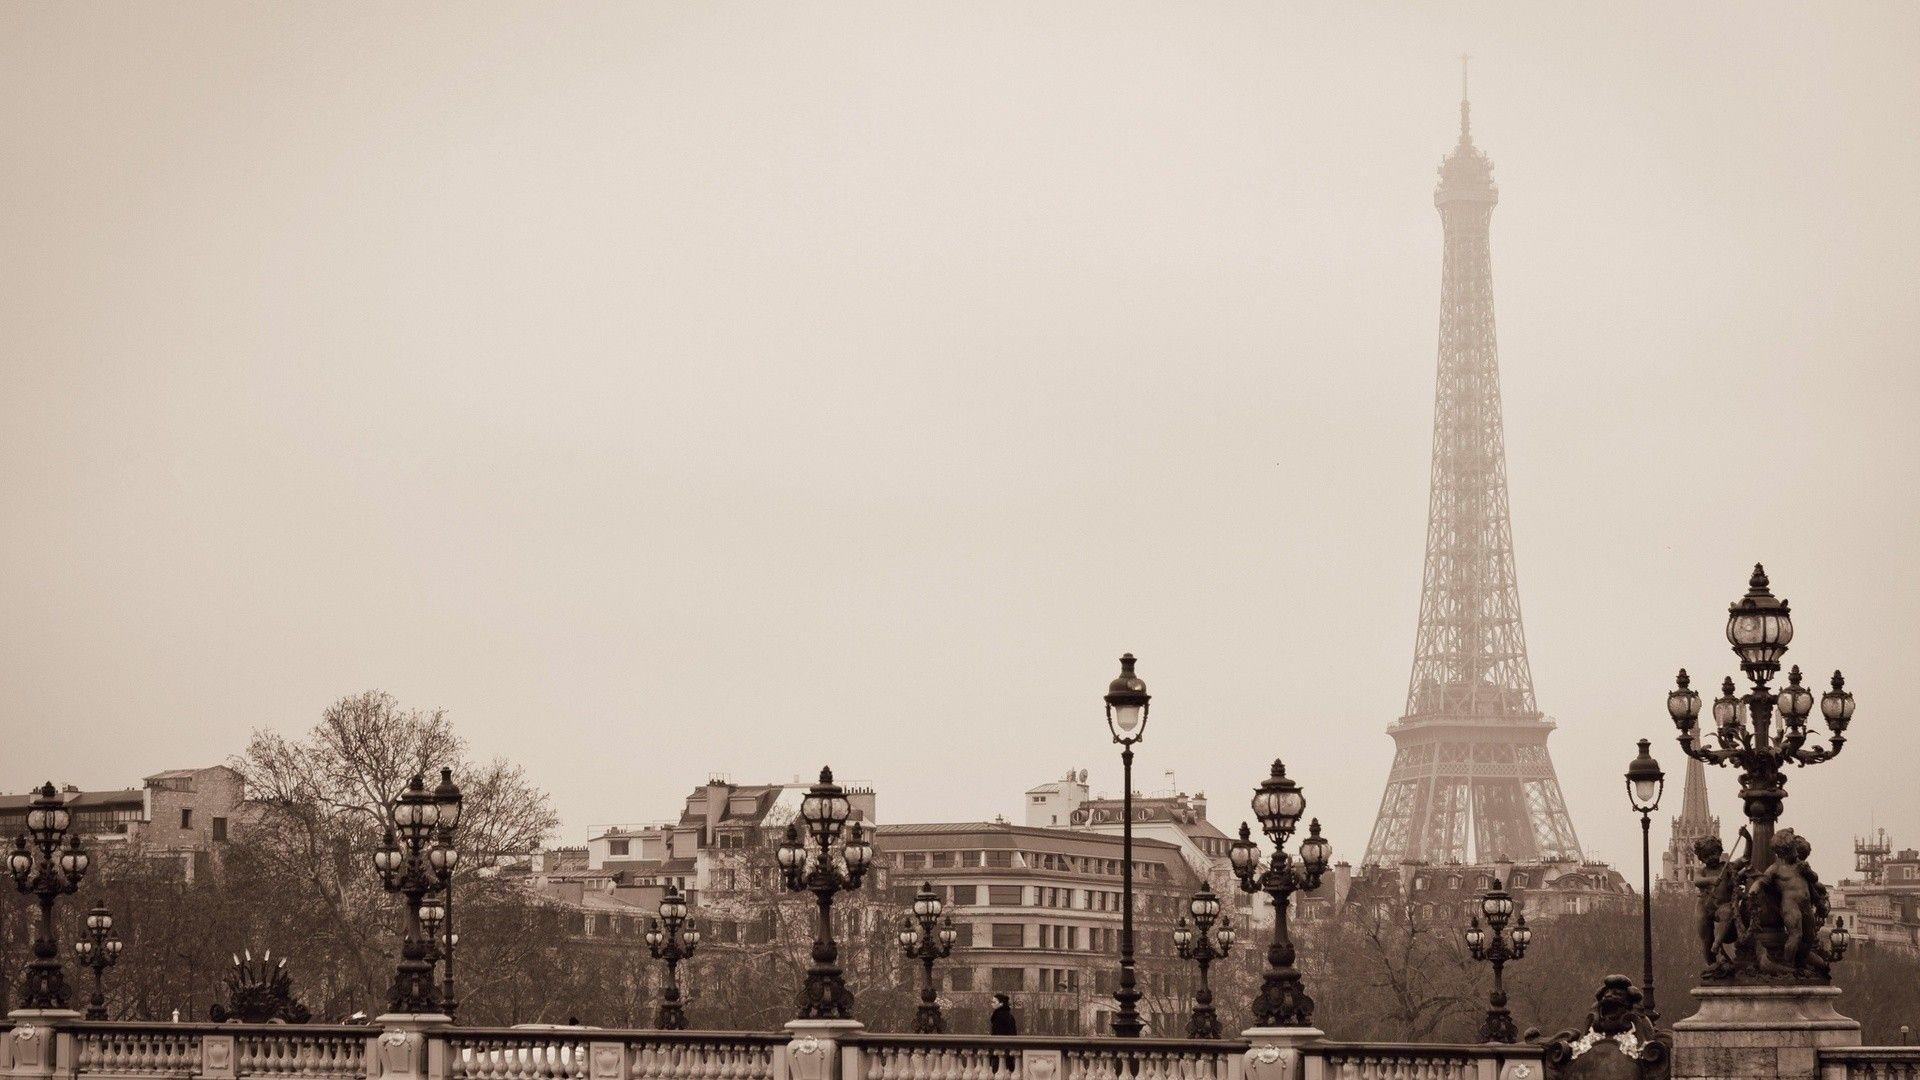 Bạn muốn tìm kiếm một hình nền Paris cổ điển Pháp để có thể tận hưởng mùi vị của Paris ngay tại nơi làm việc của mình? Hãy xem ngay bức ảnh tuyệt đẹp này và cảm nhận sự lãng mạn và đẳng cấp của thành phố ánh sáng.